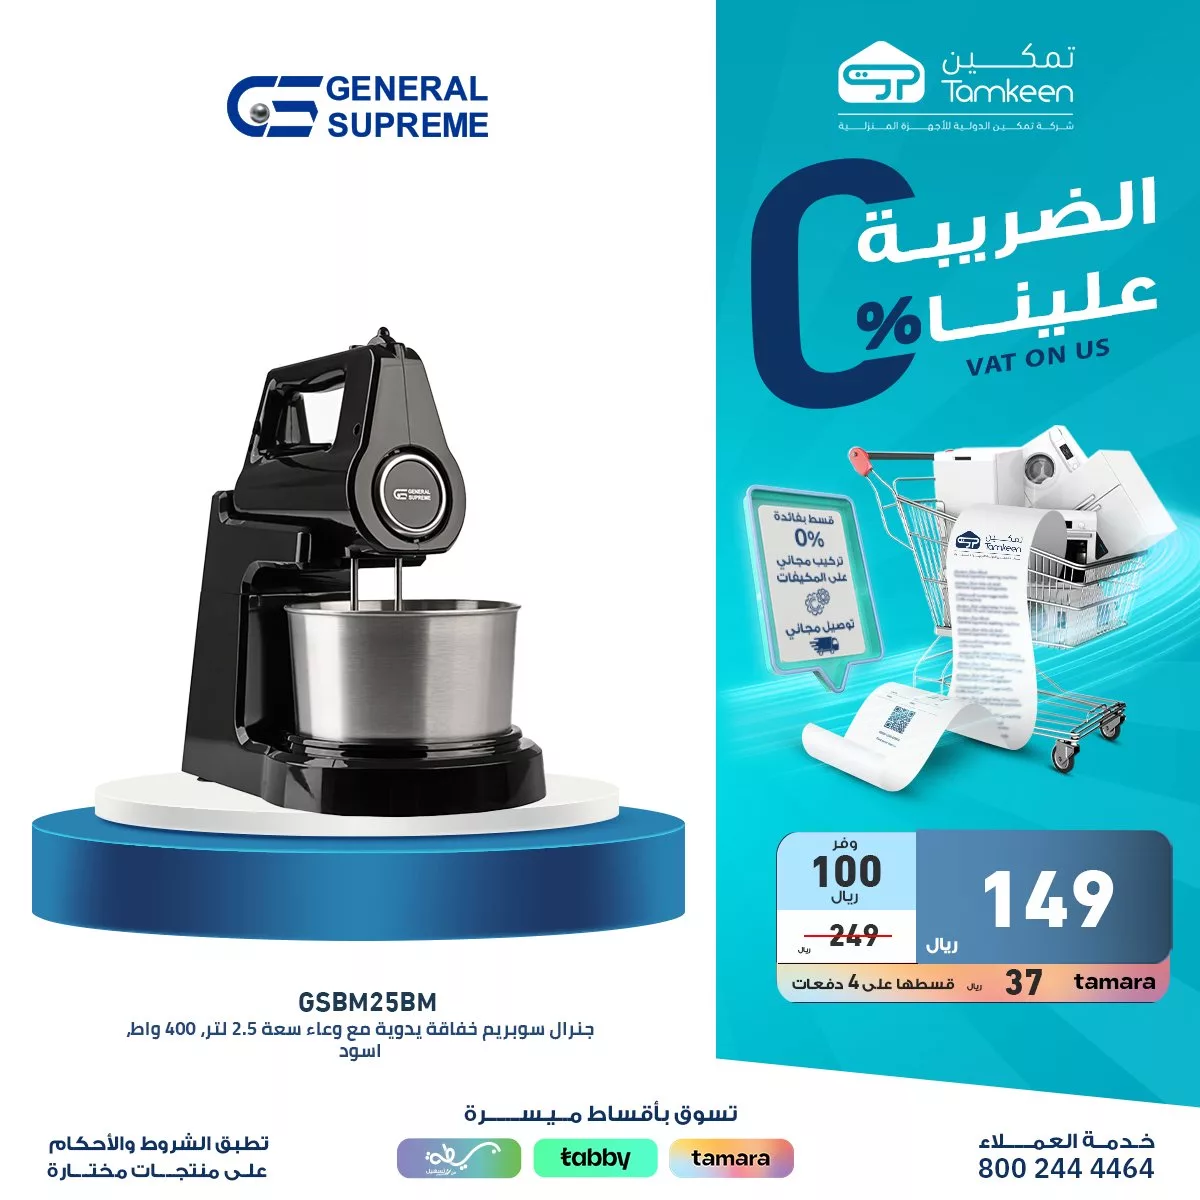 GMqbLuxXEAAWhAx jpg - عروض تمكين السعودية للاجهزة الكهربائية | تسوق بأقساط ميسرة